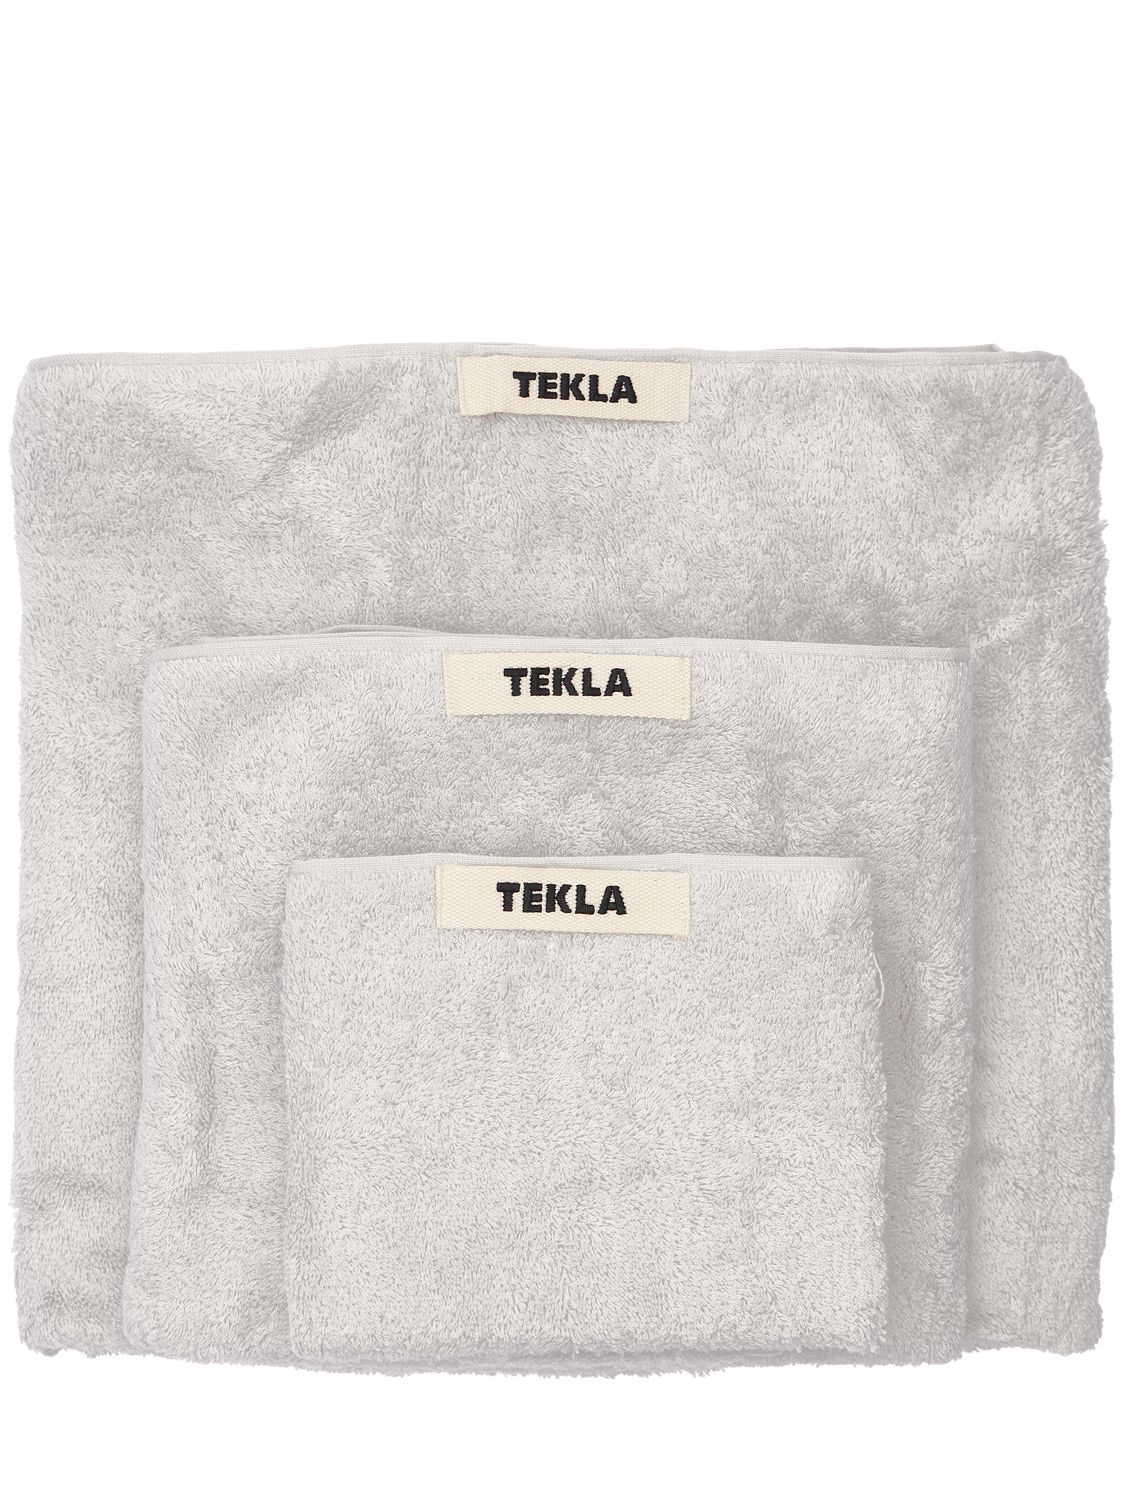 Tekla 有机棉毛巾3条套装 In Grey